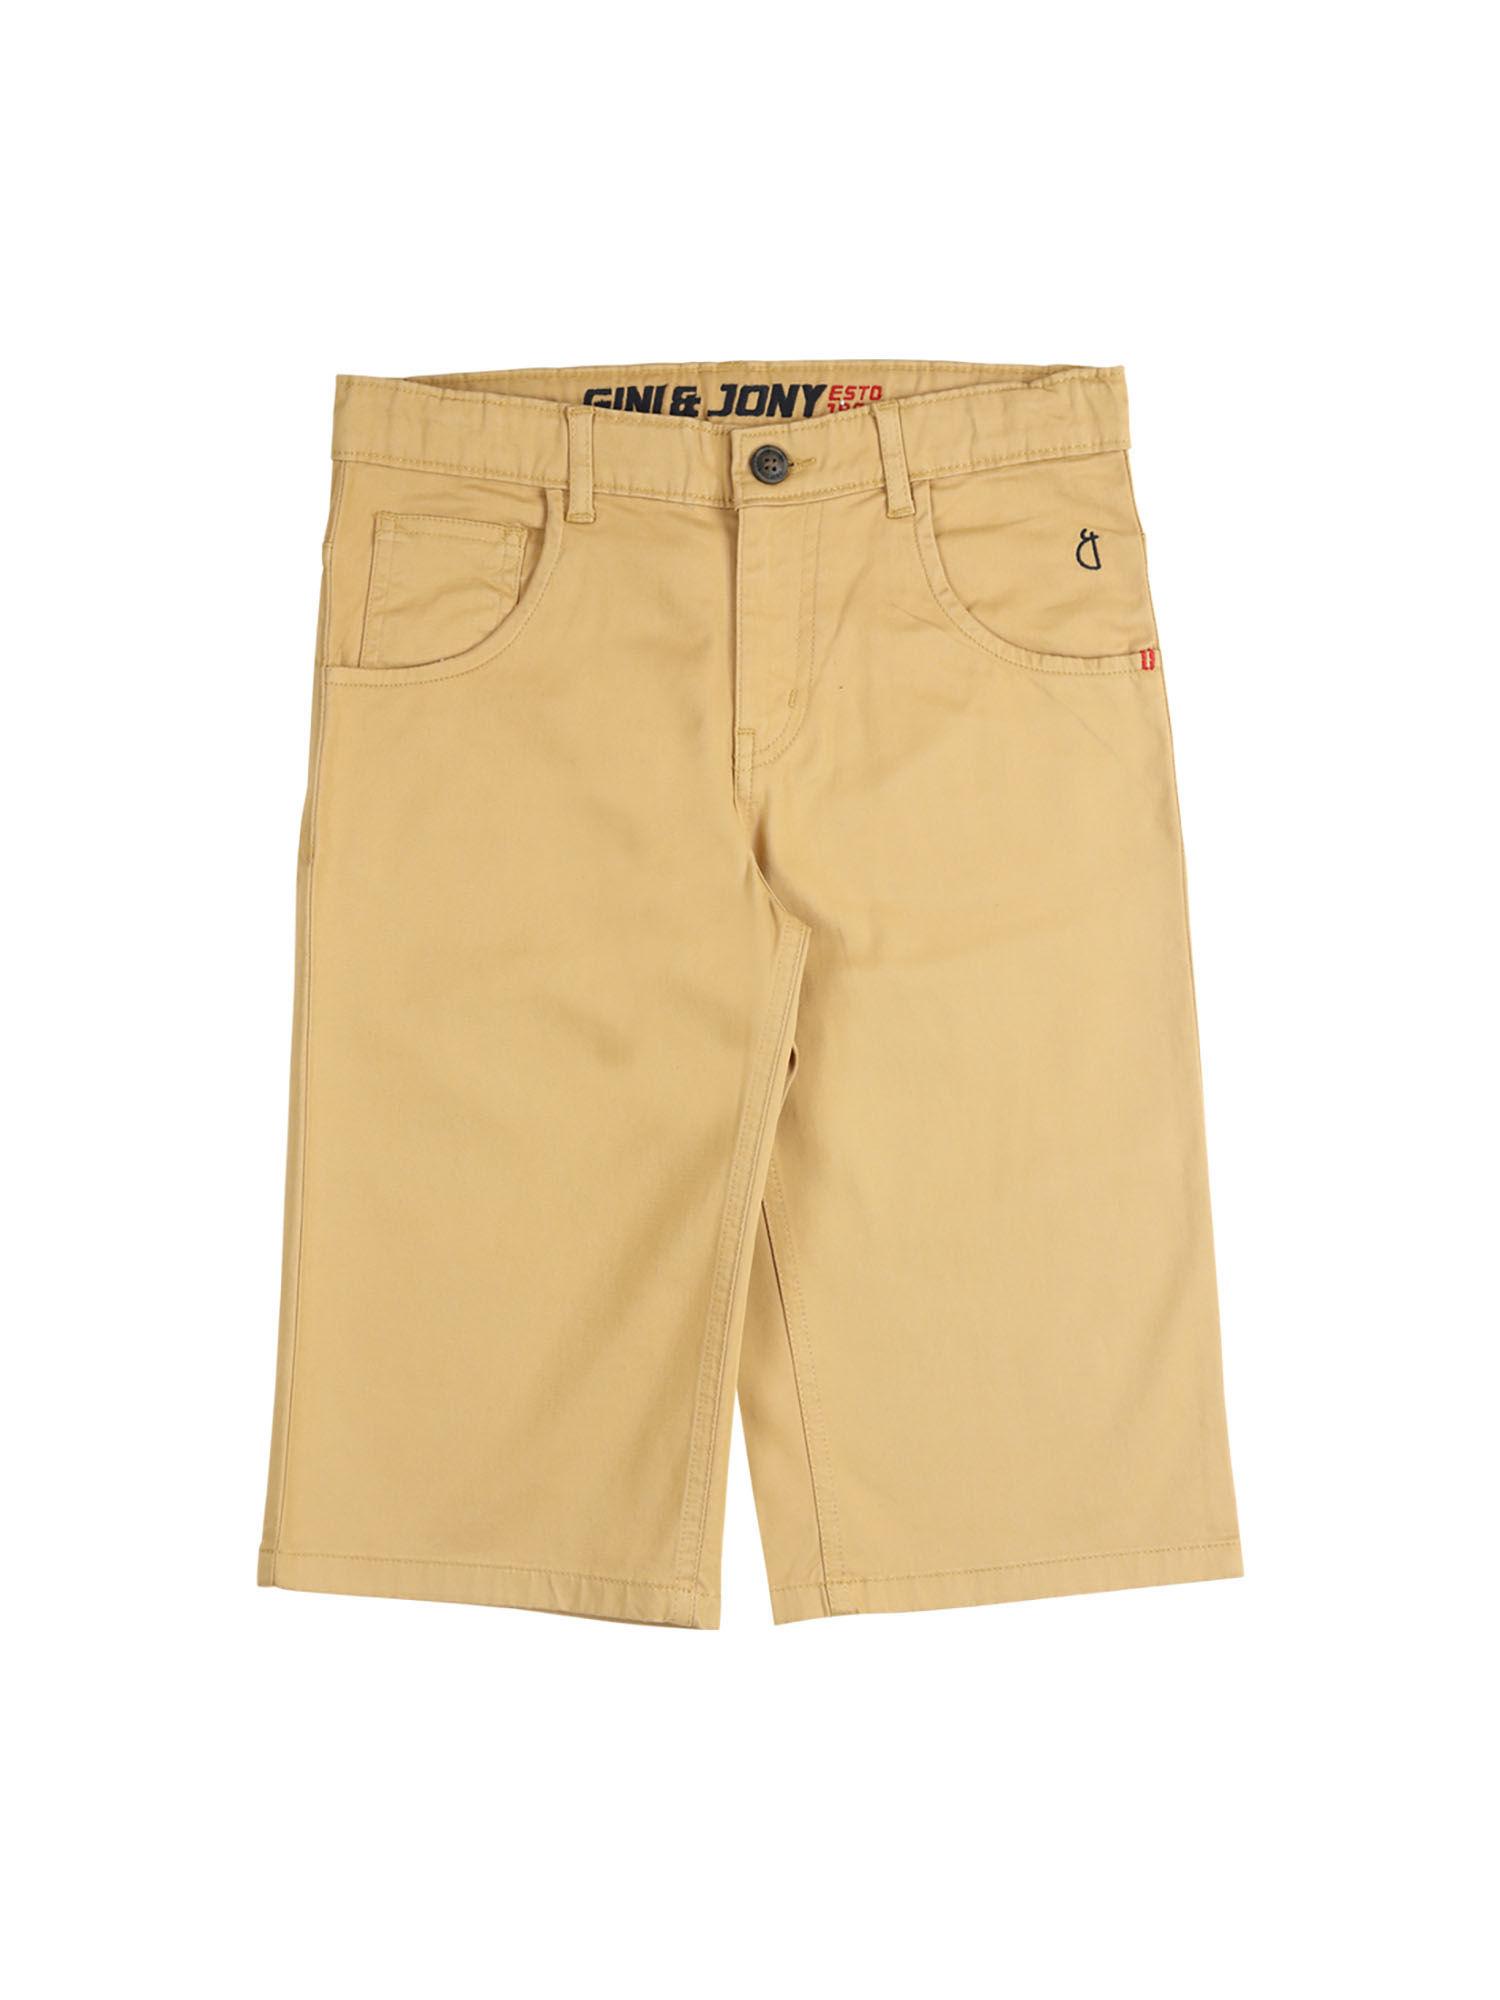 khaki color solid plain shorts